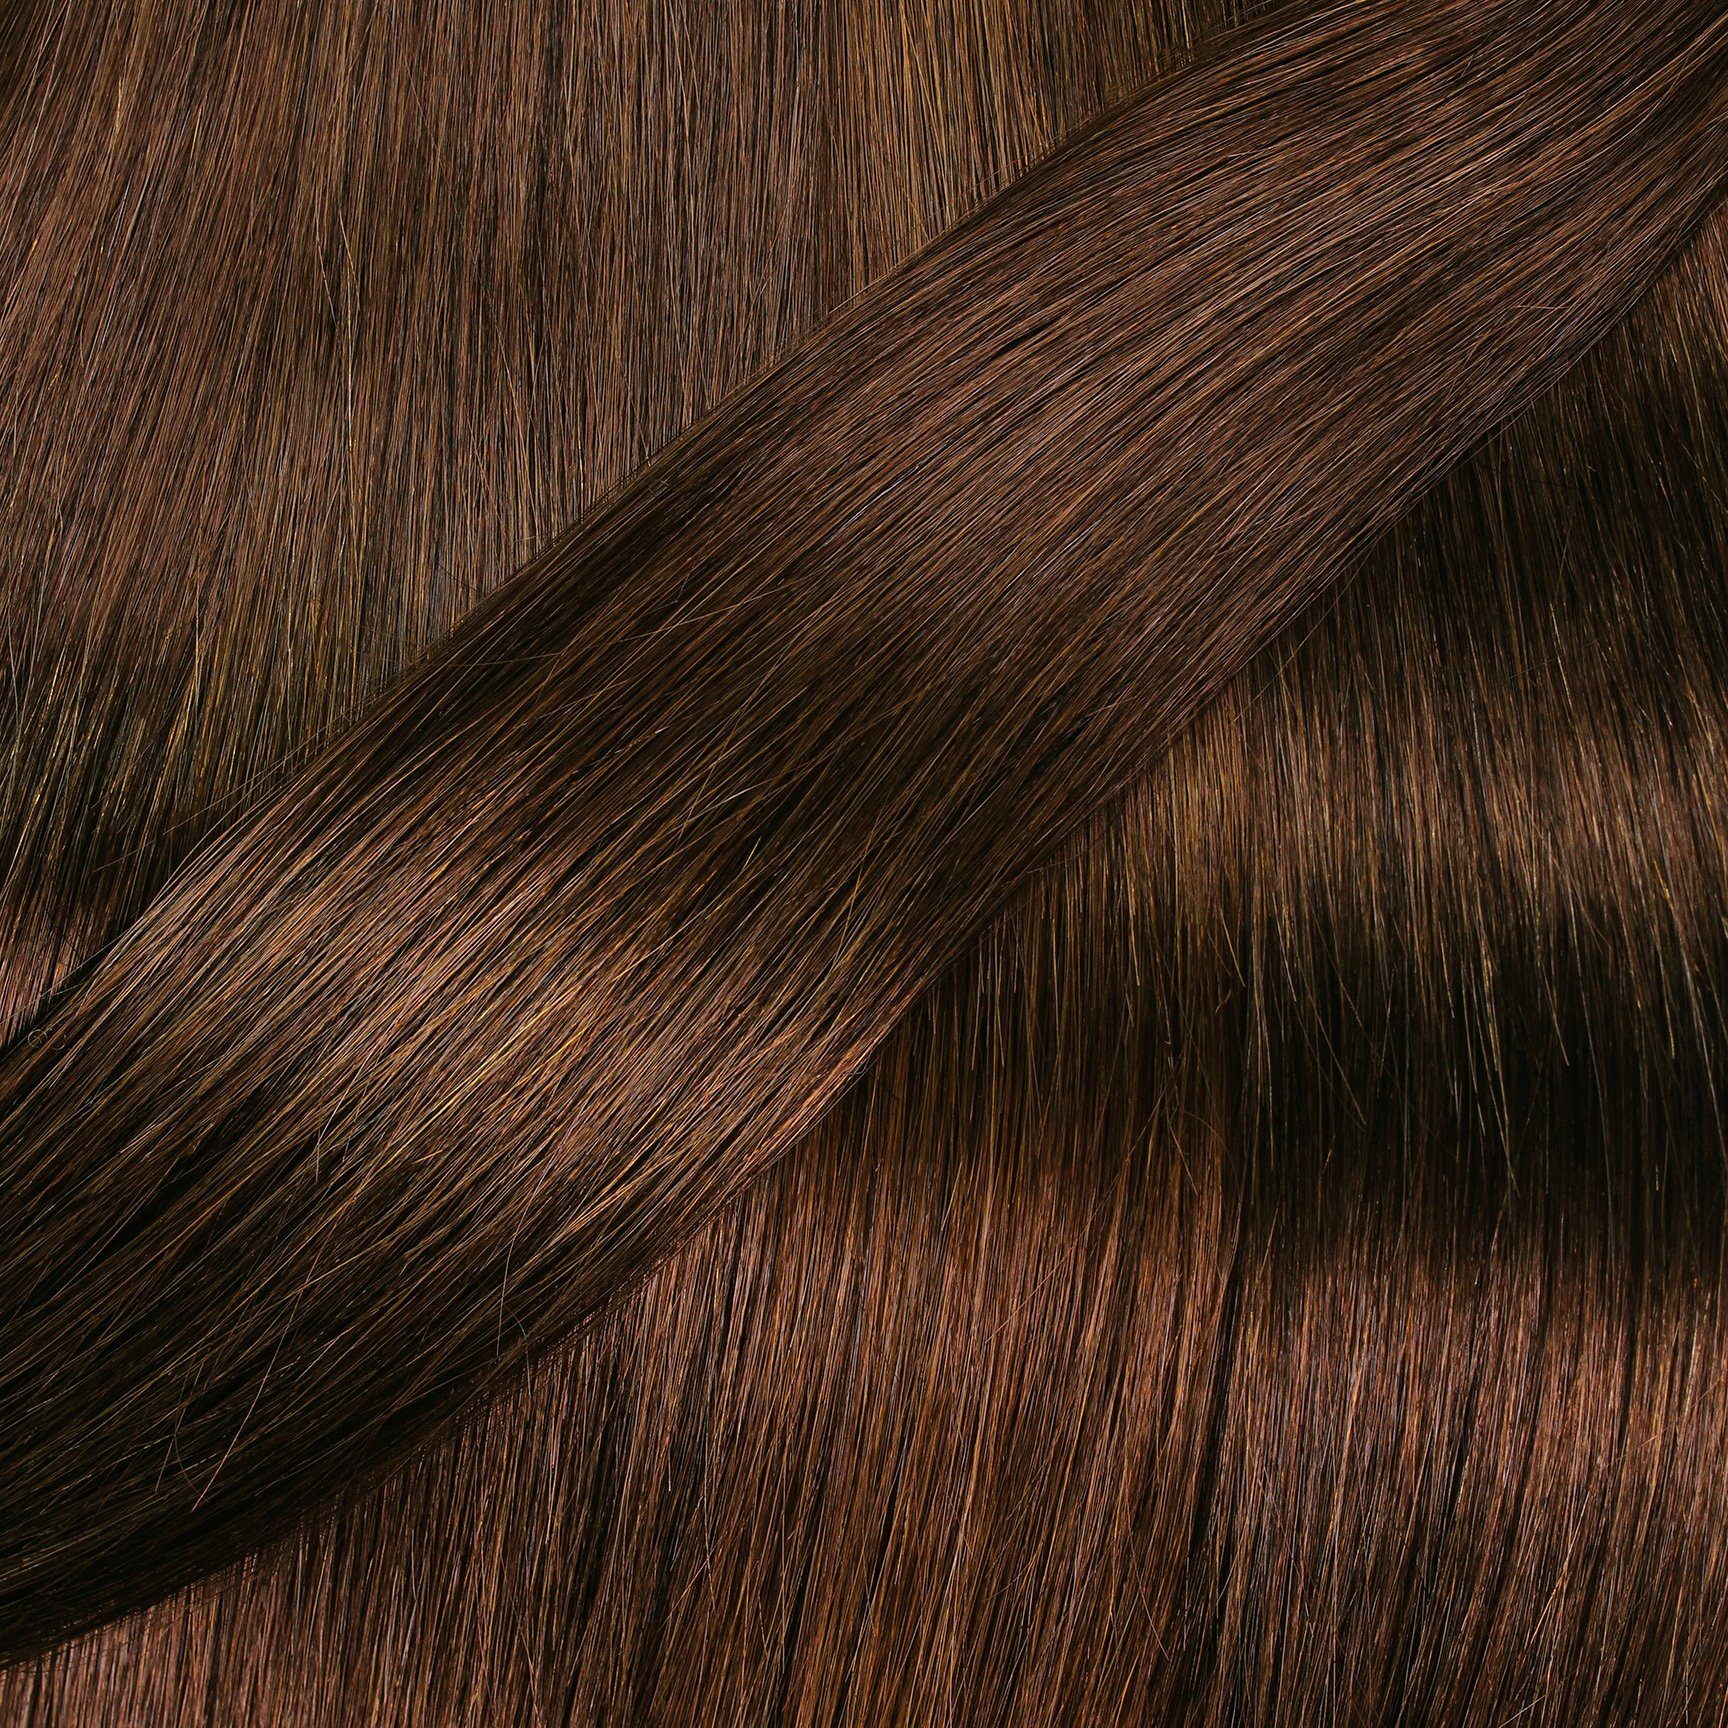 Tape Extensions hair2heart Gold gewellt #6/3 Echthaar-Extension Dunkelblond 40cm